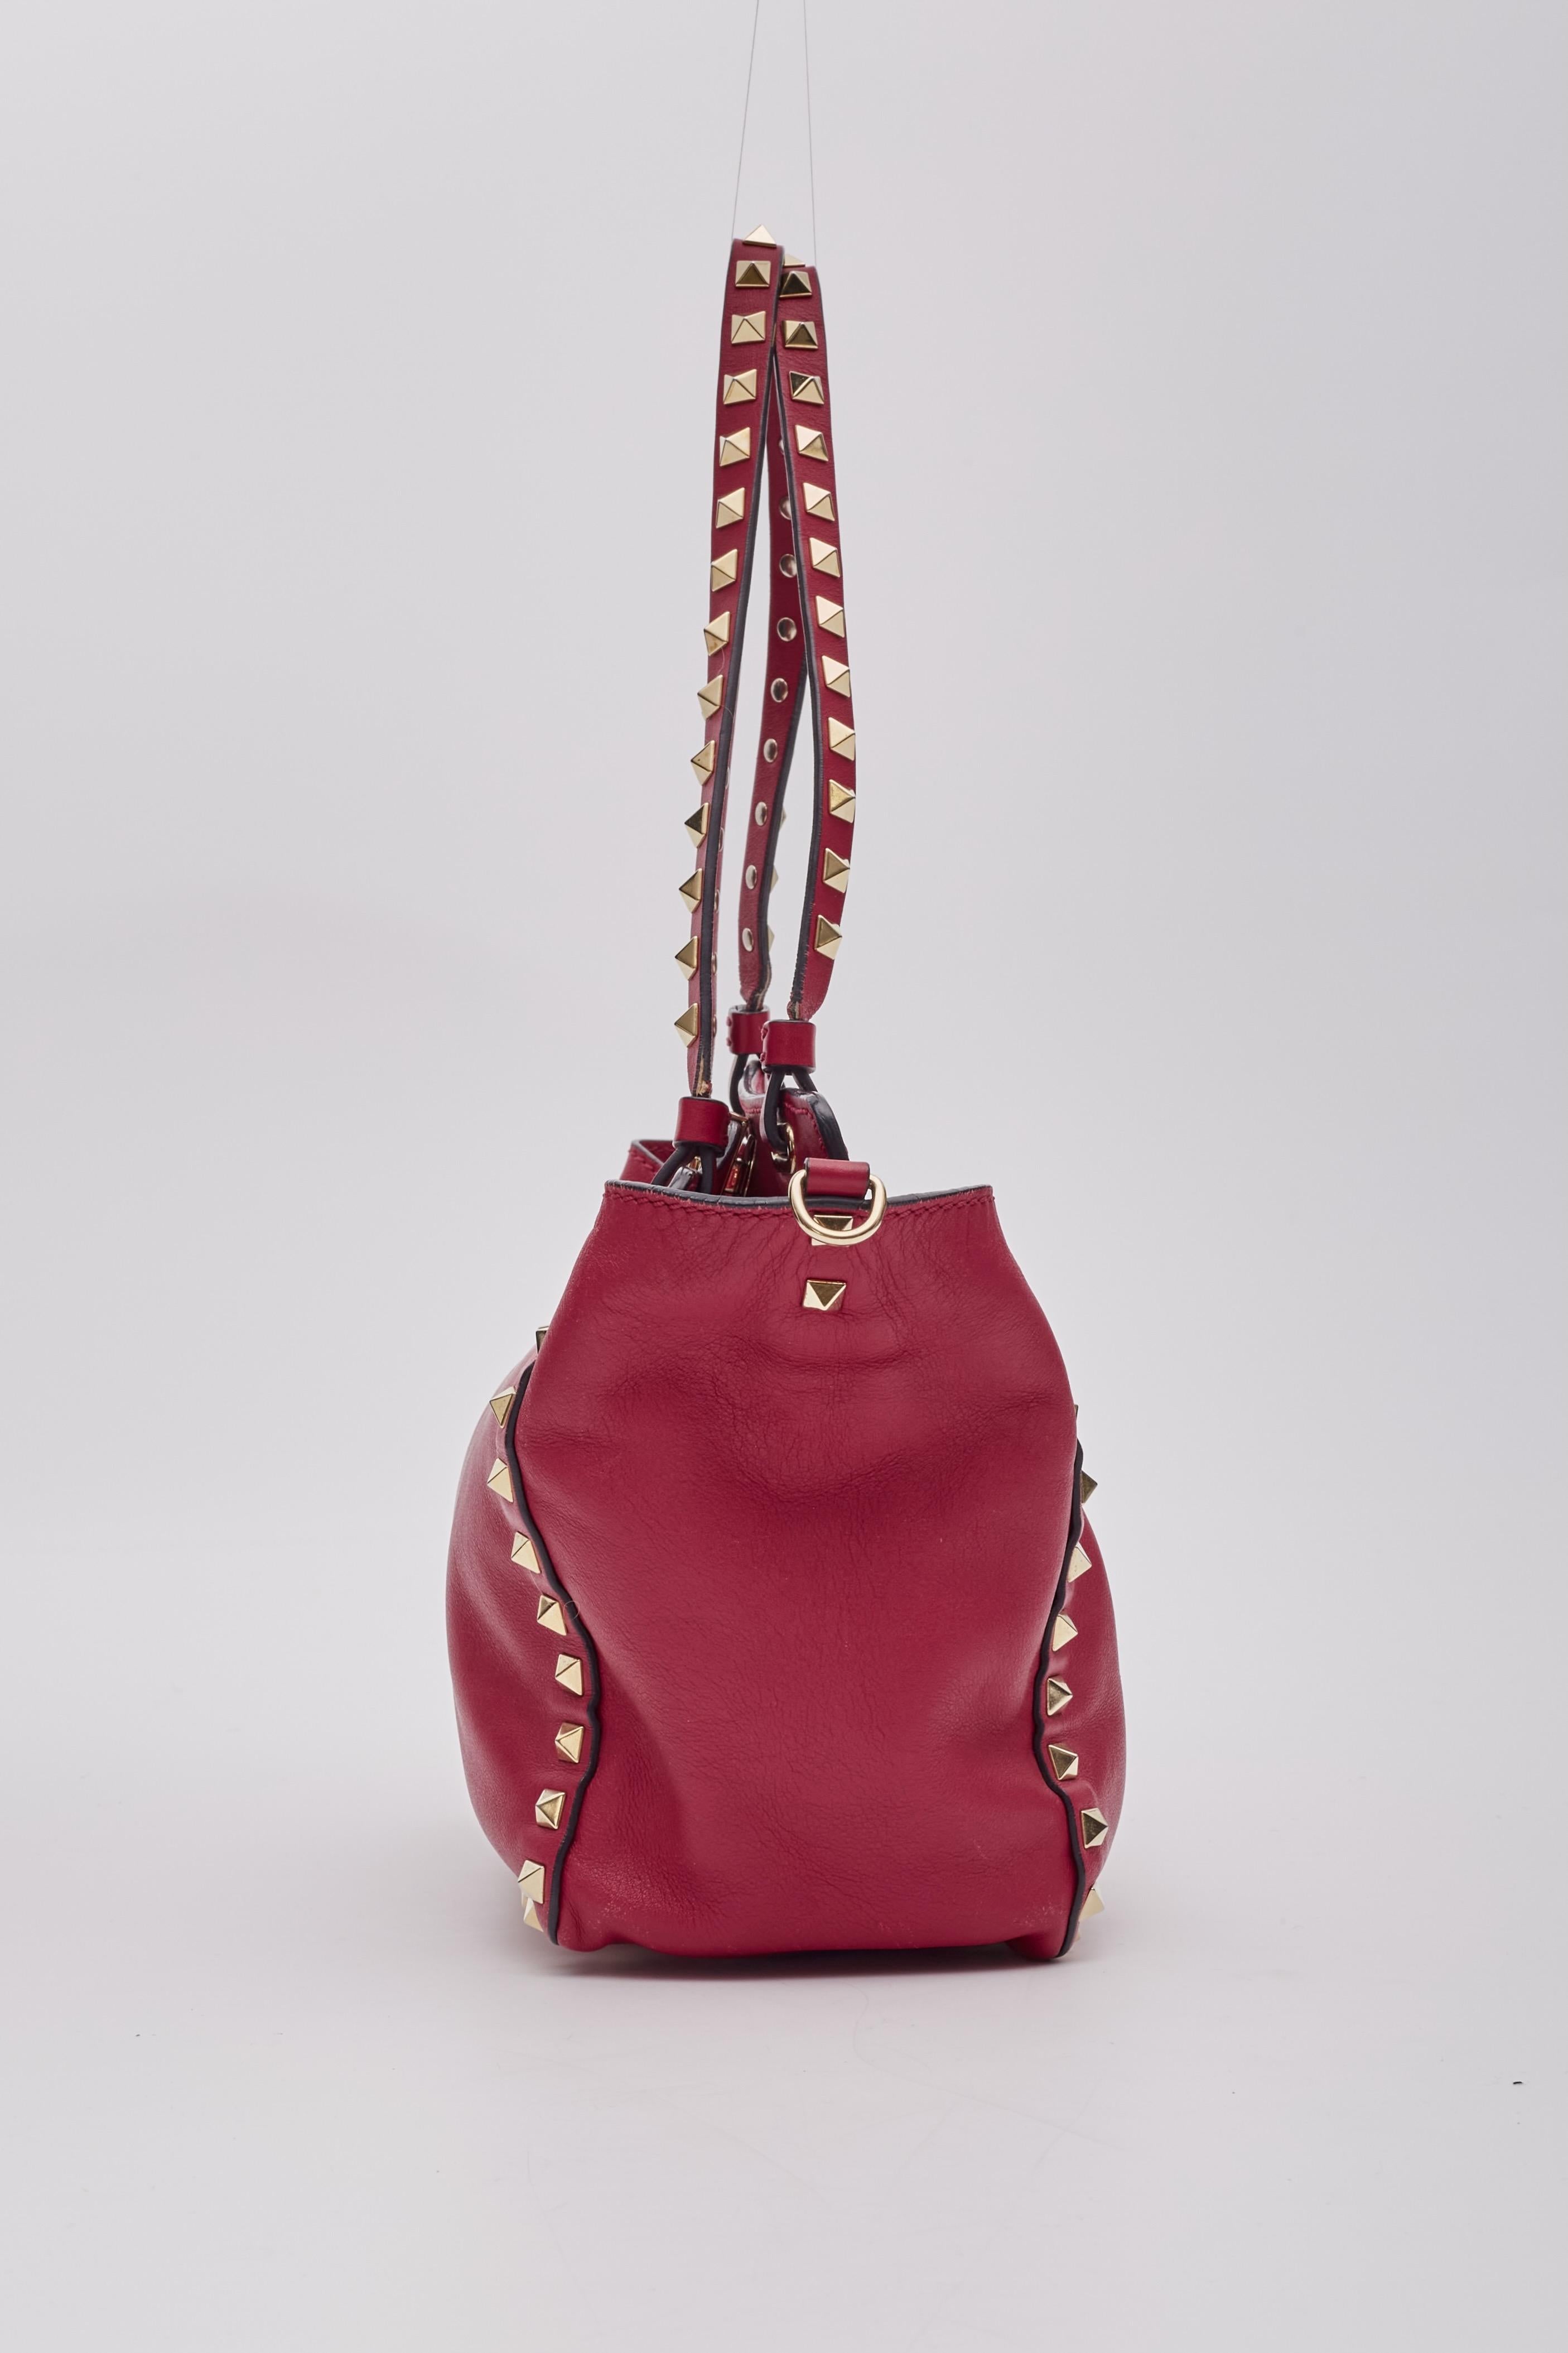 Valentino Garavani Red Leather Rockstud Shoulder Bag For Sale 1